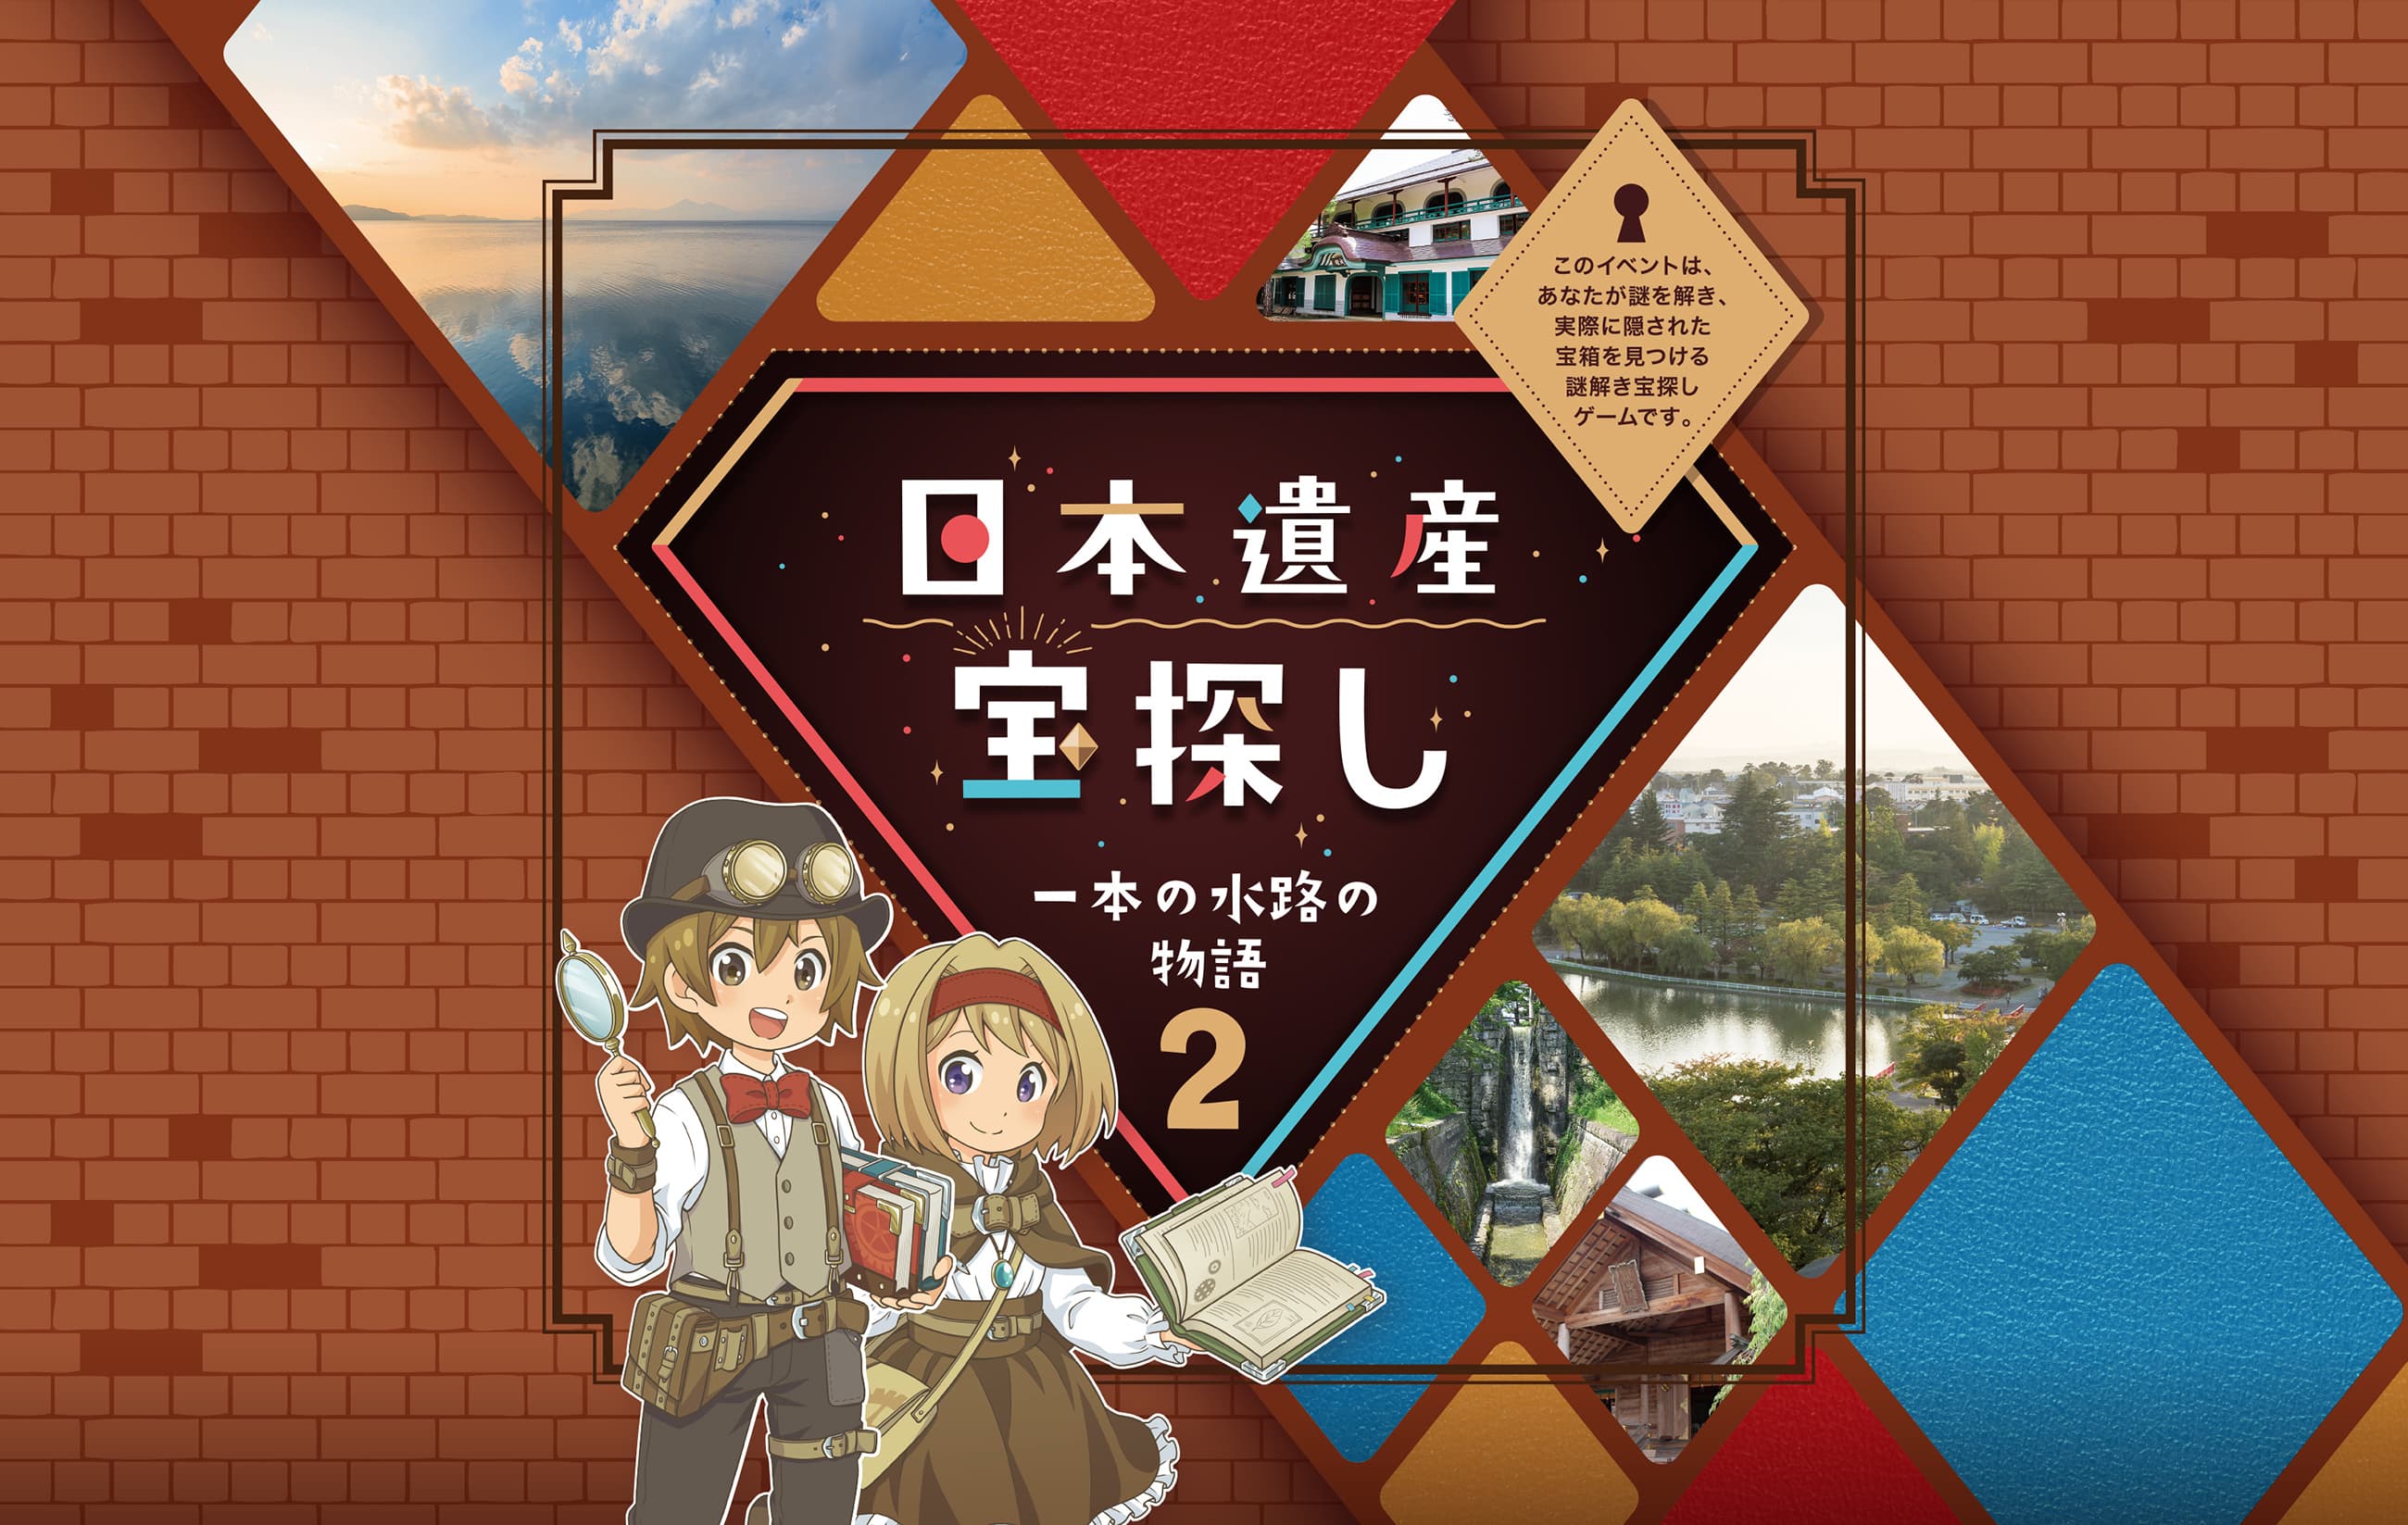 日本遺産宝探し 一本の水路の物語2 ※このイベントは、あなたが謎を解き、実際に隠された宝箱を見つける謎解き宝探しゲームです。